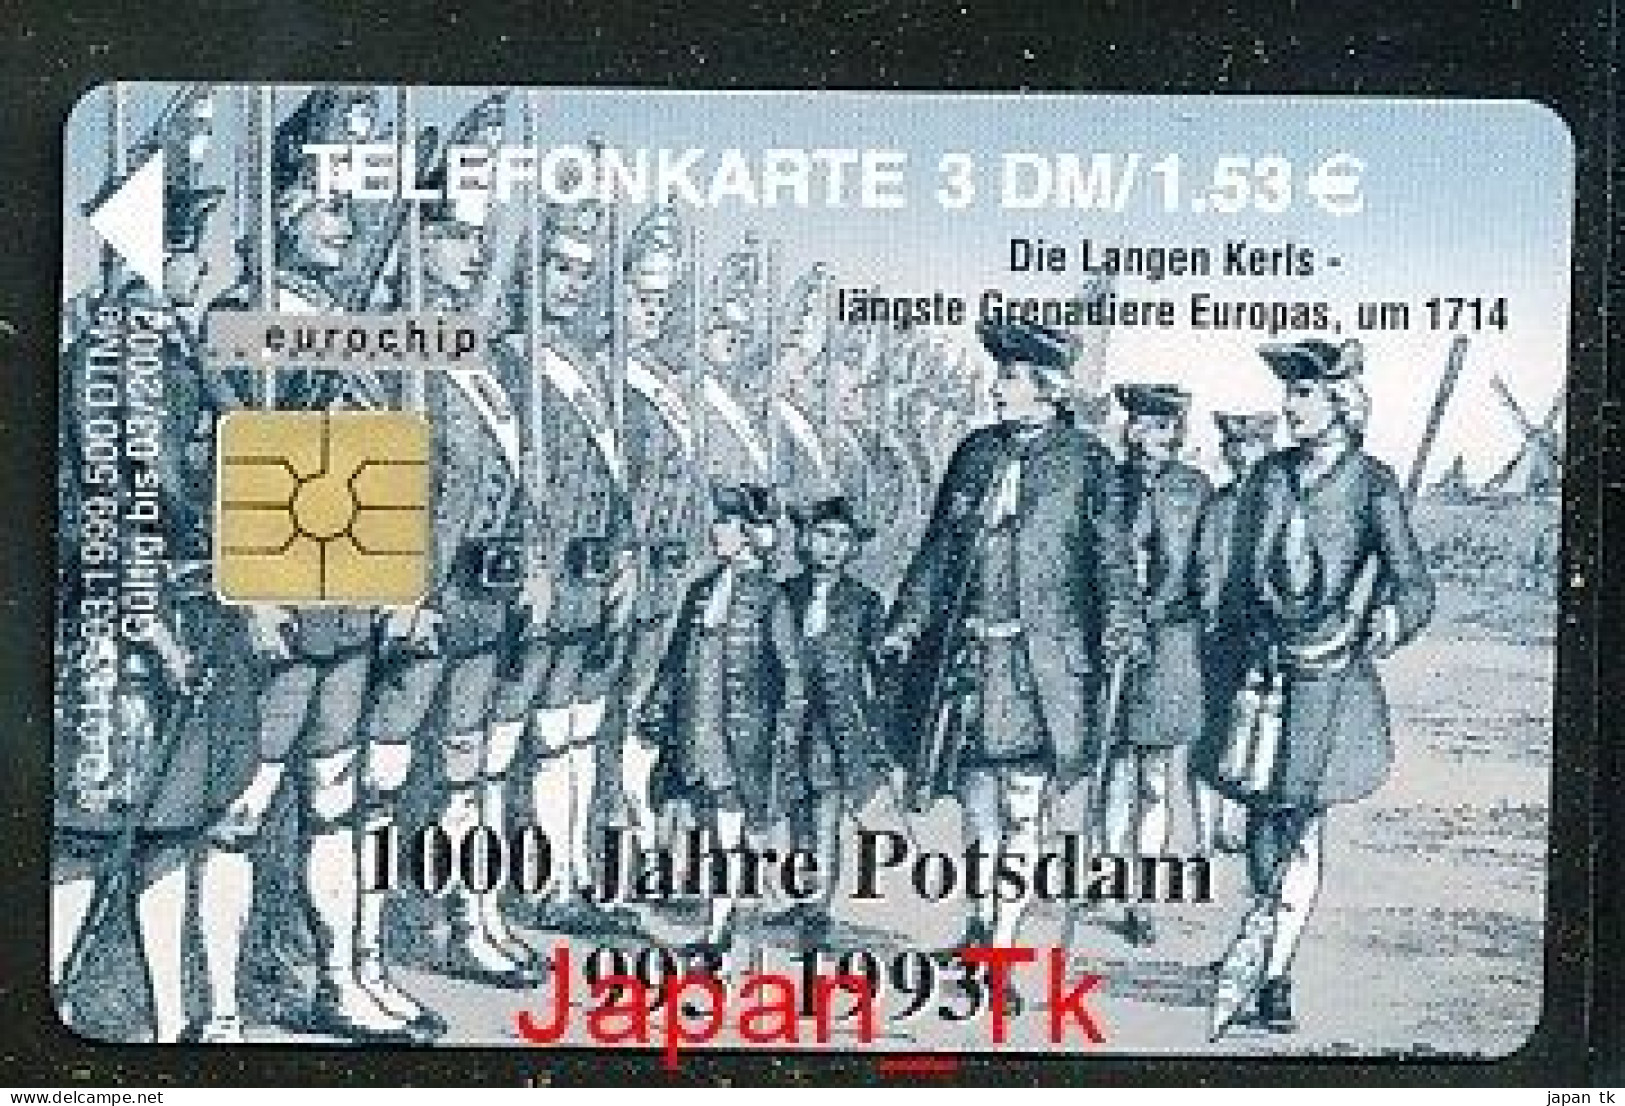 GERMANY O 113 99 1000 Jahre Potsdam   - Aufl  500 - Siehe Scan - O-Series: Kundenserie Vom Sammlerservice Ausgeschlossen